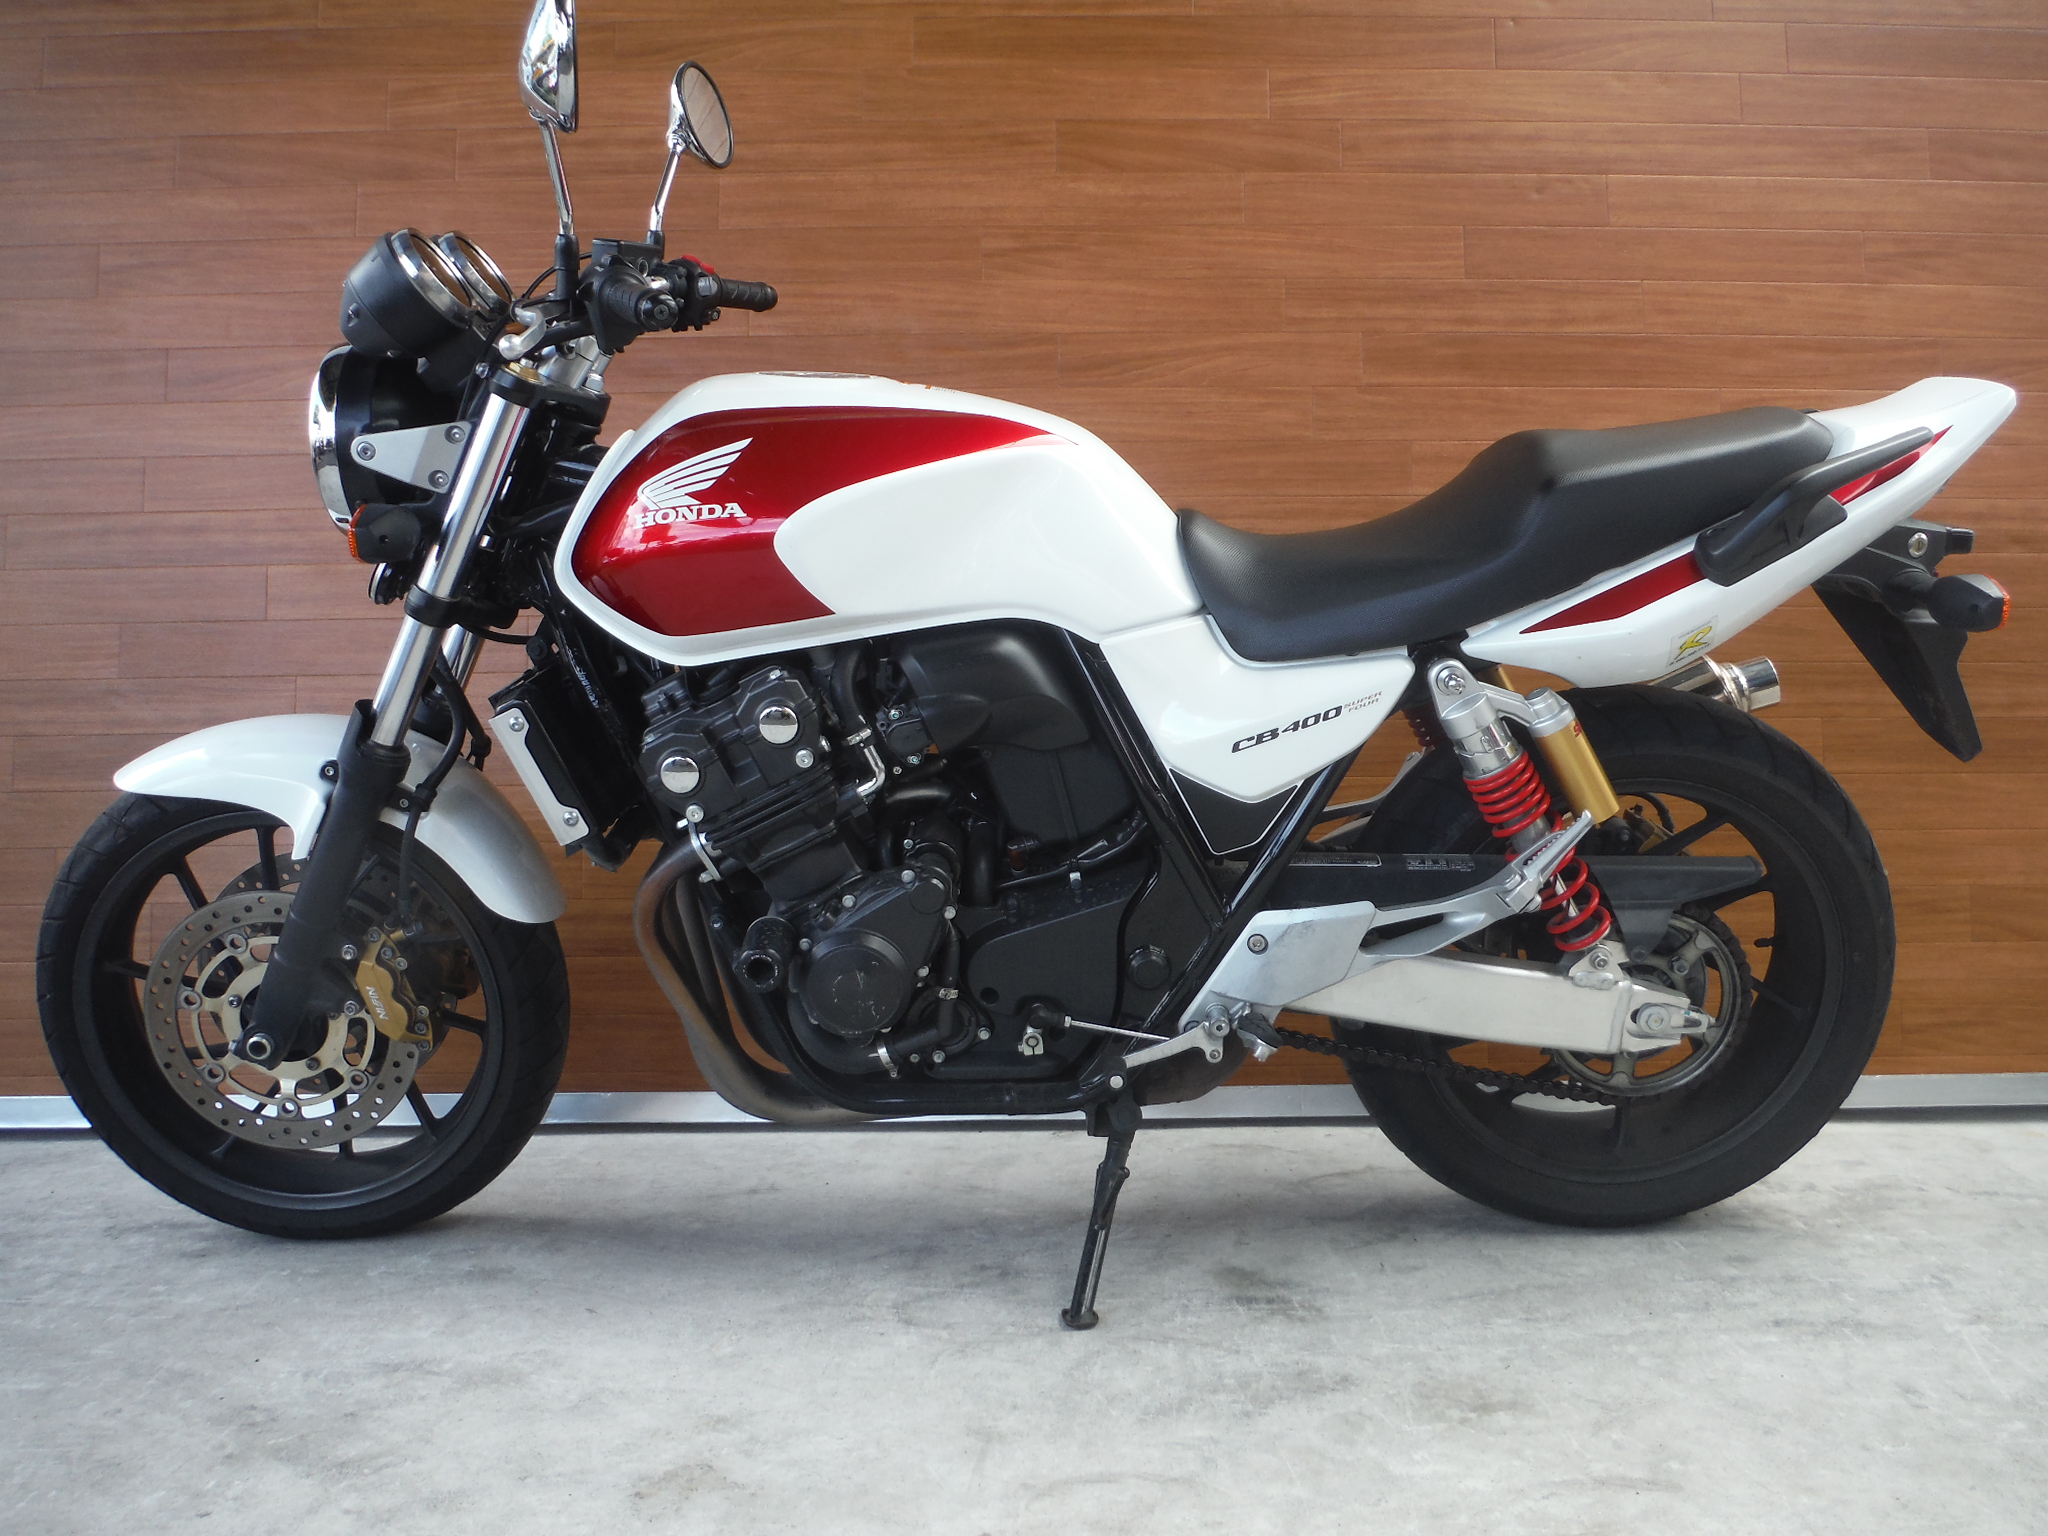 熊本中古車バイク情報 ホンダ Cb400sf 400 14年モデル 白赤 熊本のバイクショップ アール バイクの新車 中古 車販売や買取 レンタルバイクのことならおまかせください